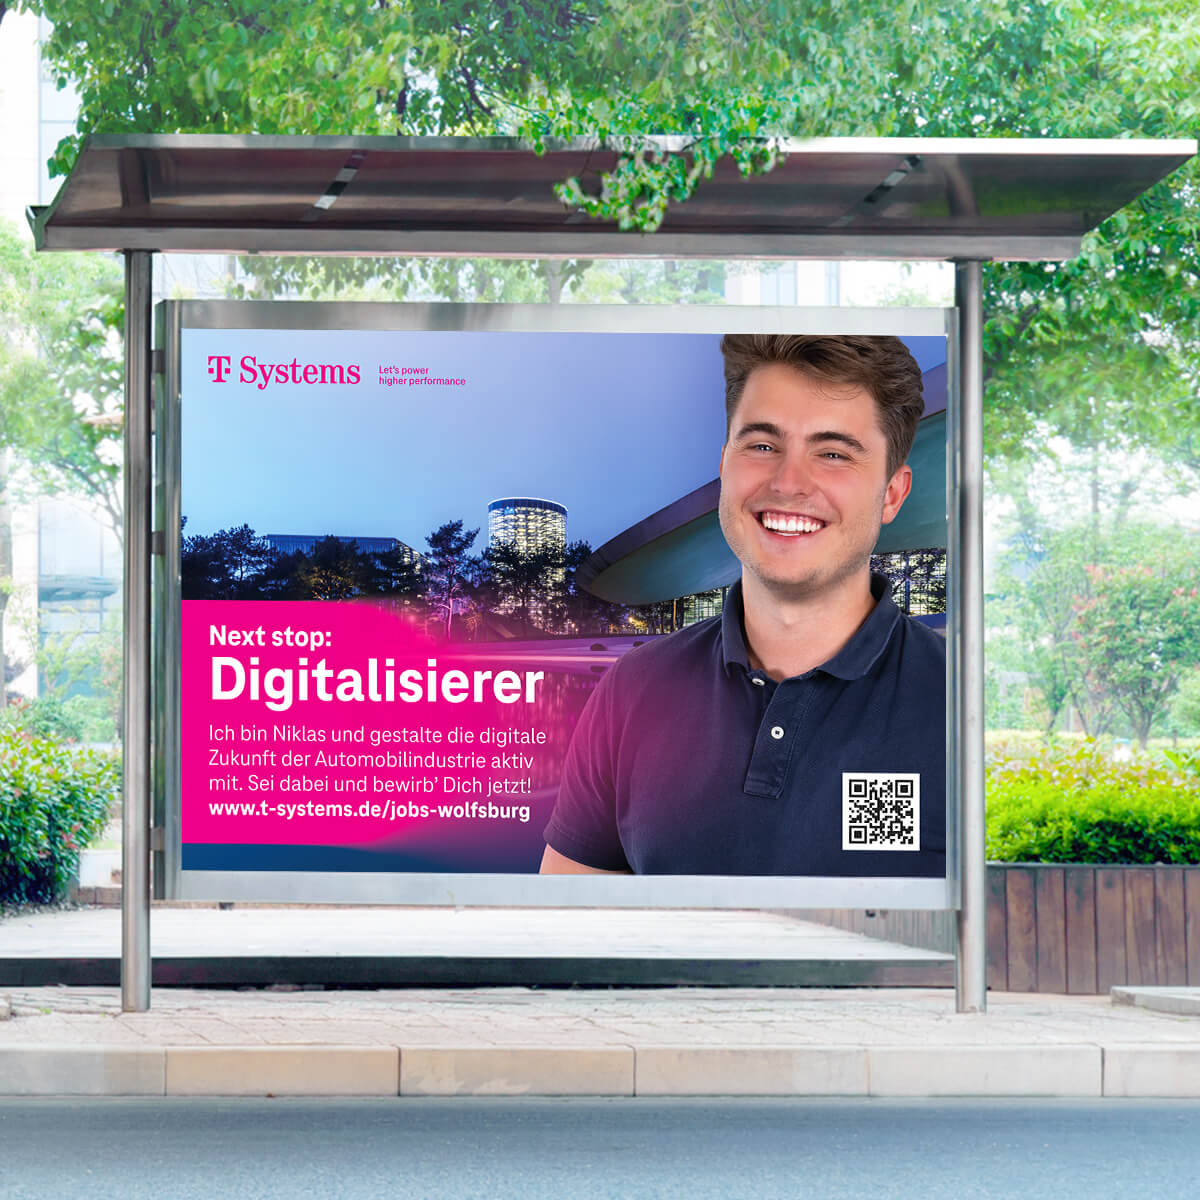 Hier ist eine Anzeigengestaltung an einer Bushaltestelle für die Wolfsburg Kampagne der T-Systems zu sehen, die von tikitay produziert wurde.